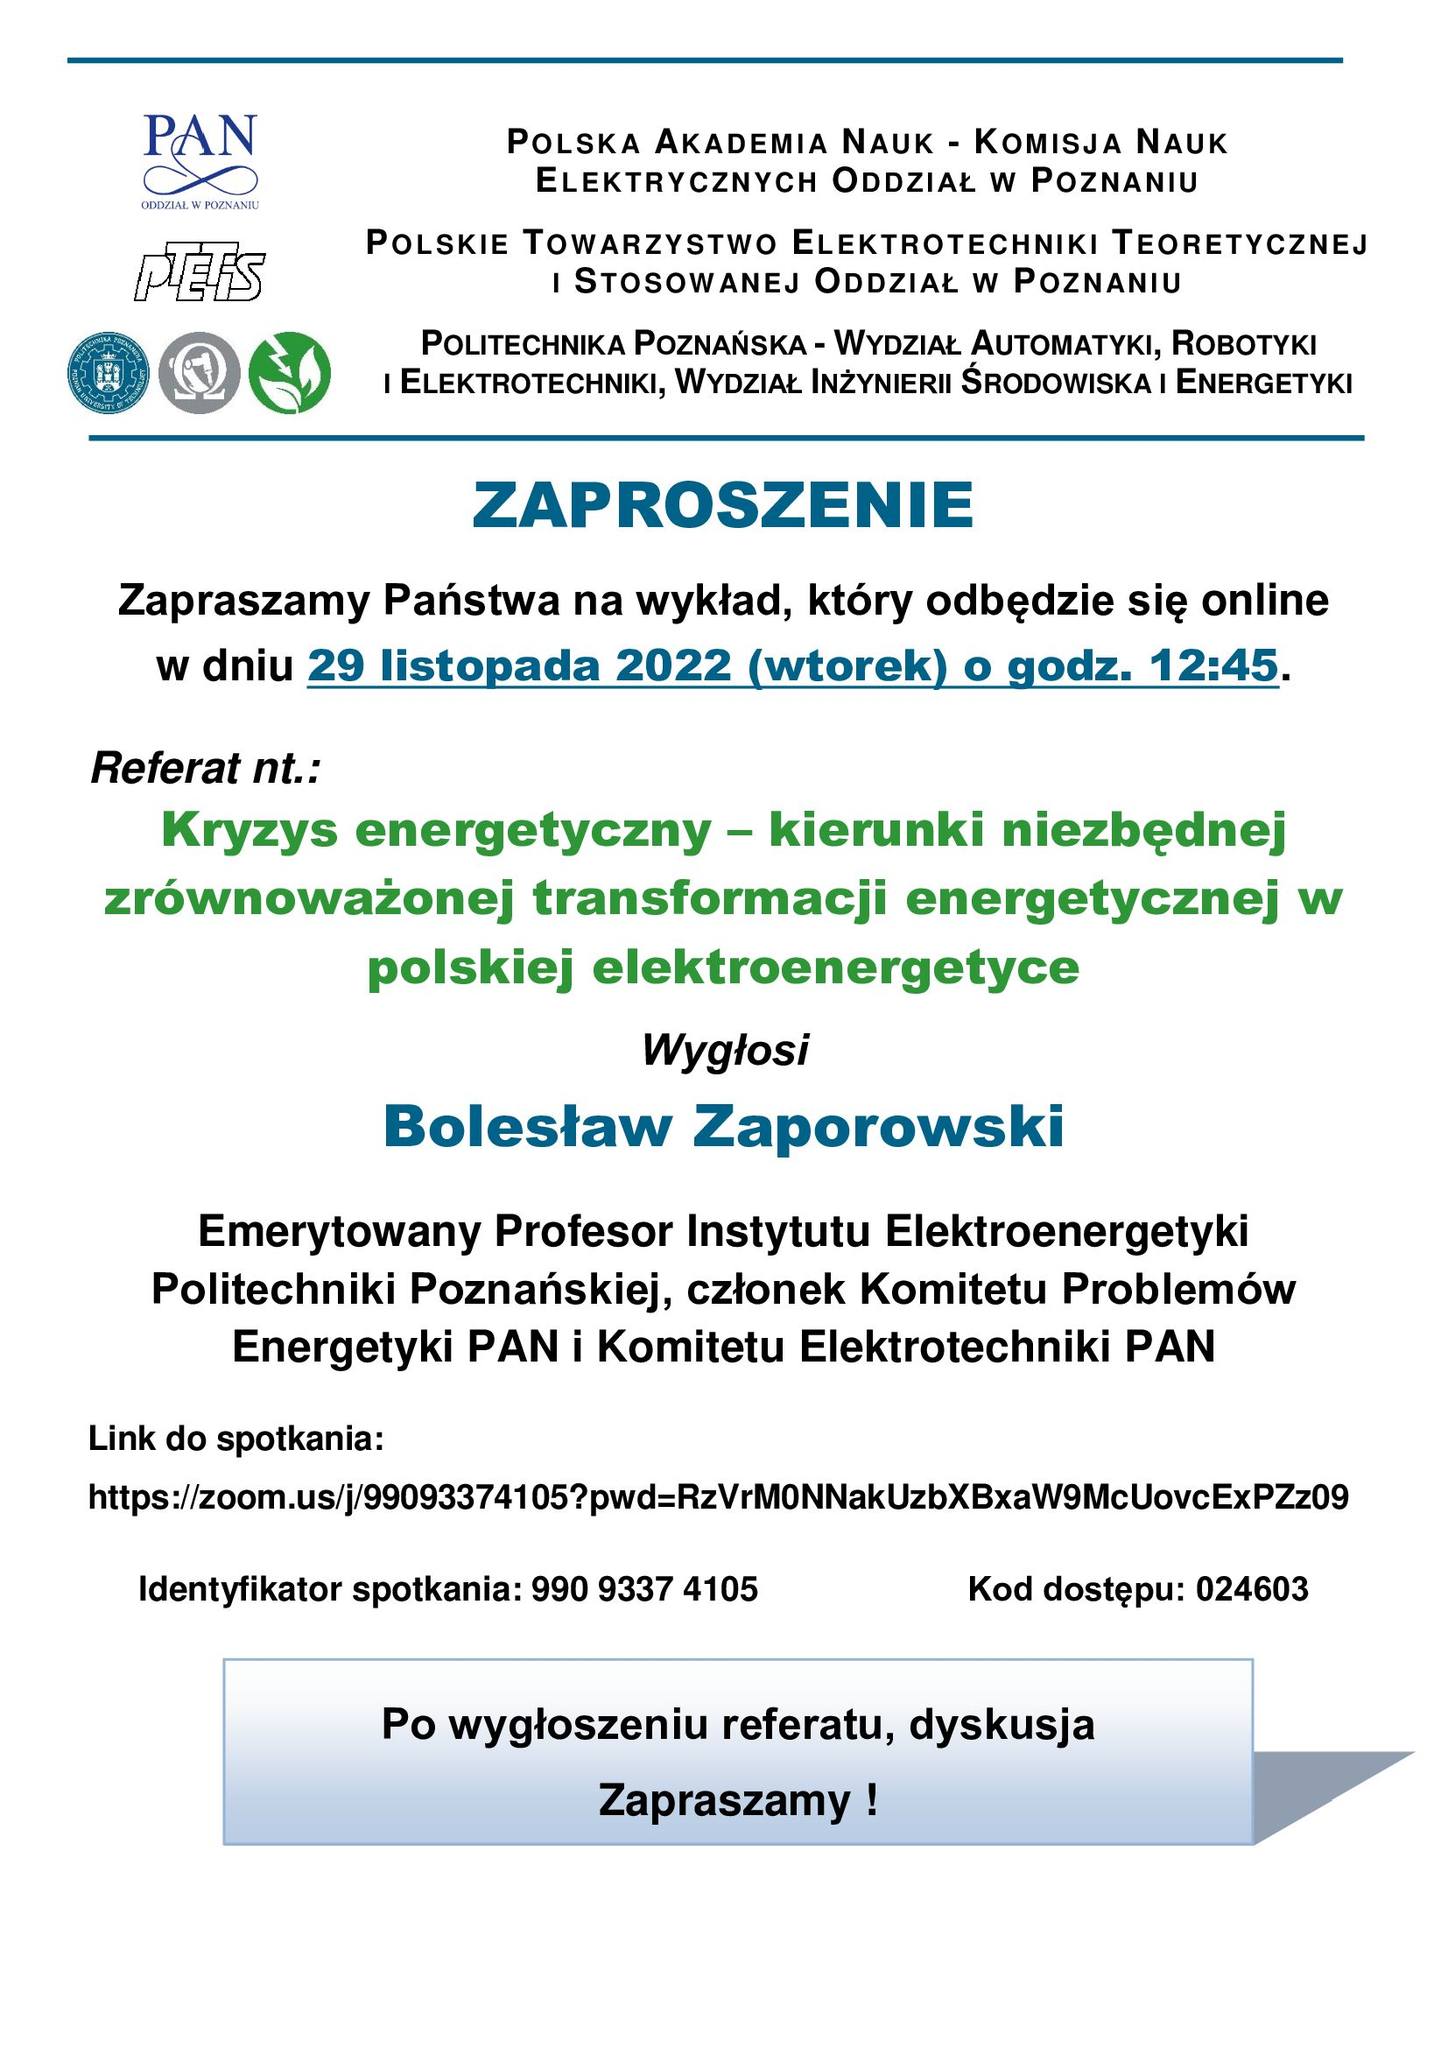 referat B.Zaporowski zaproszenie